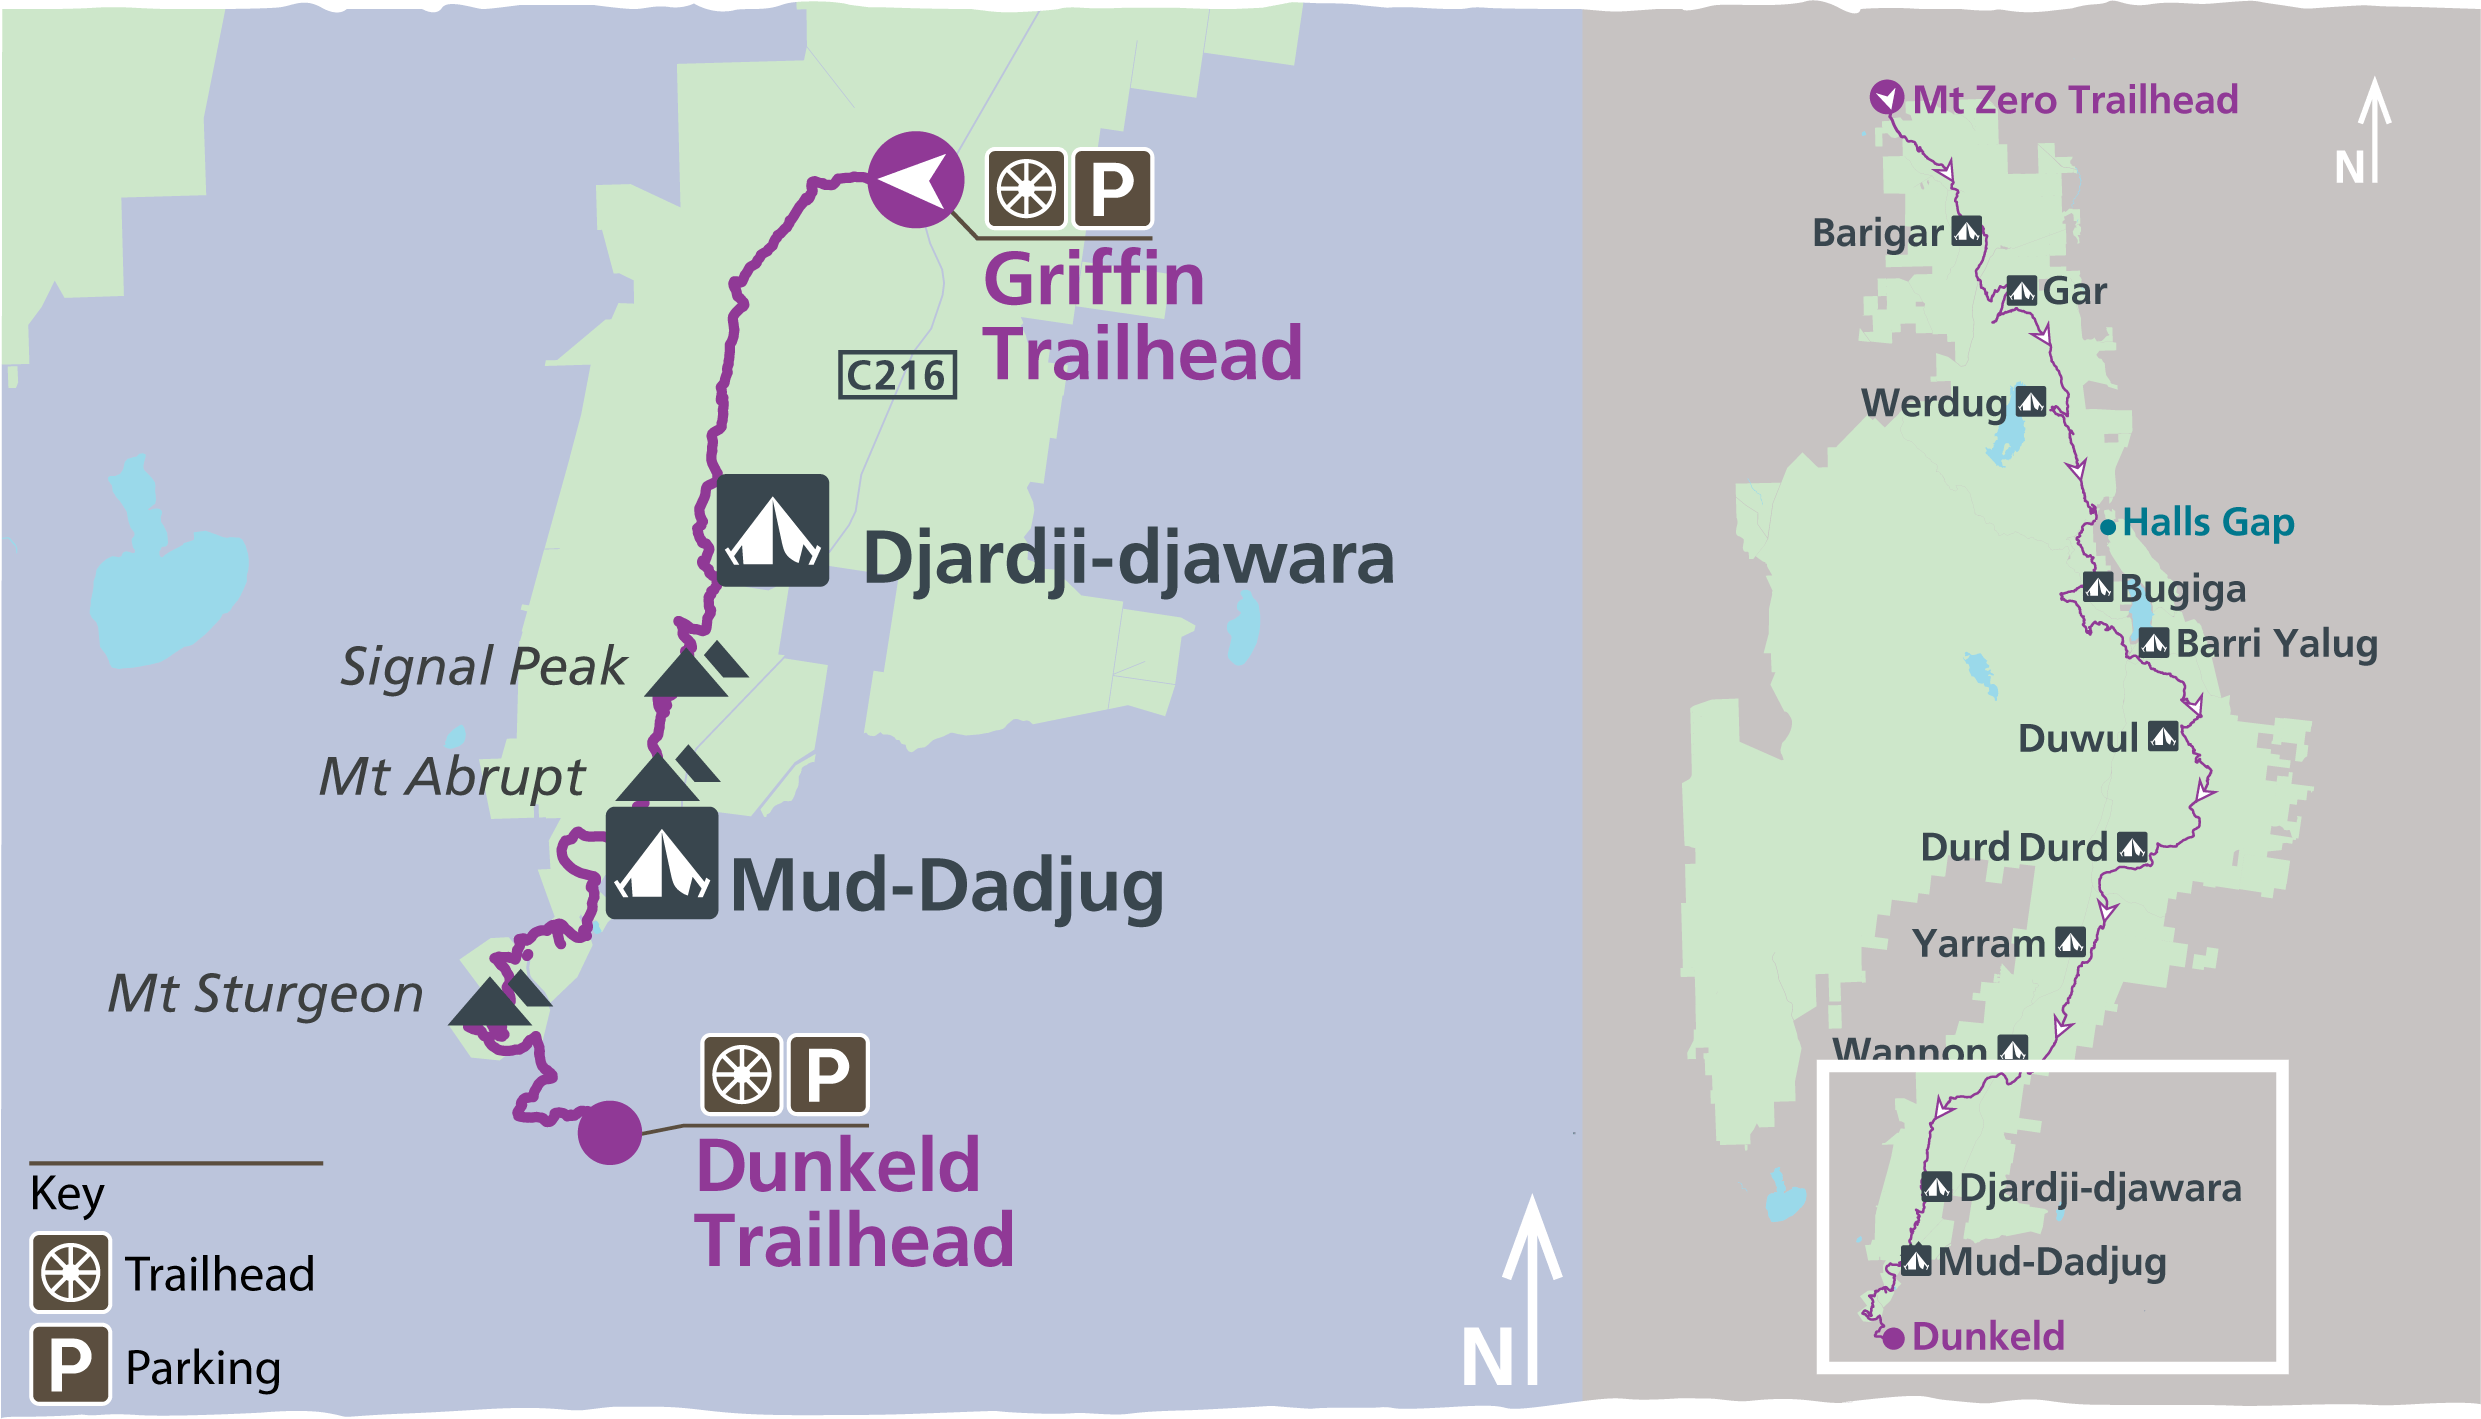 Grampians Peaks Trail Map of Djardi-djawara and Mud-dadjug multi day hike 